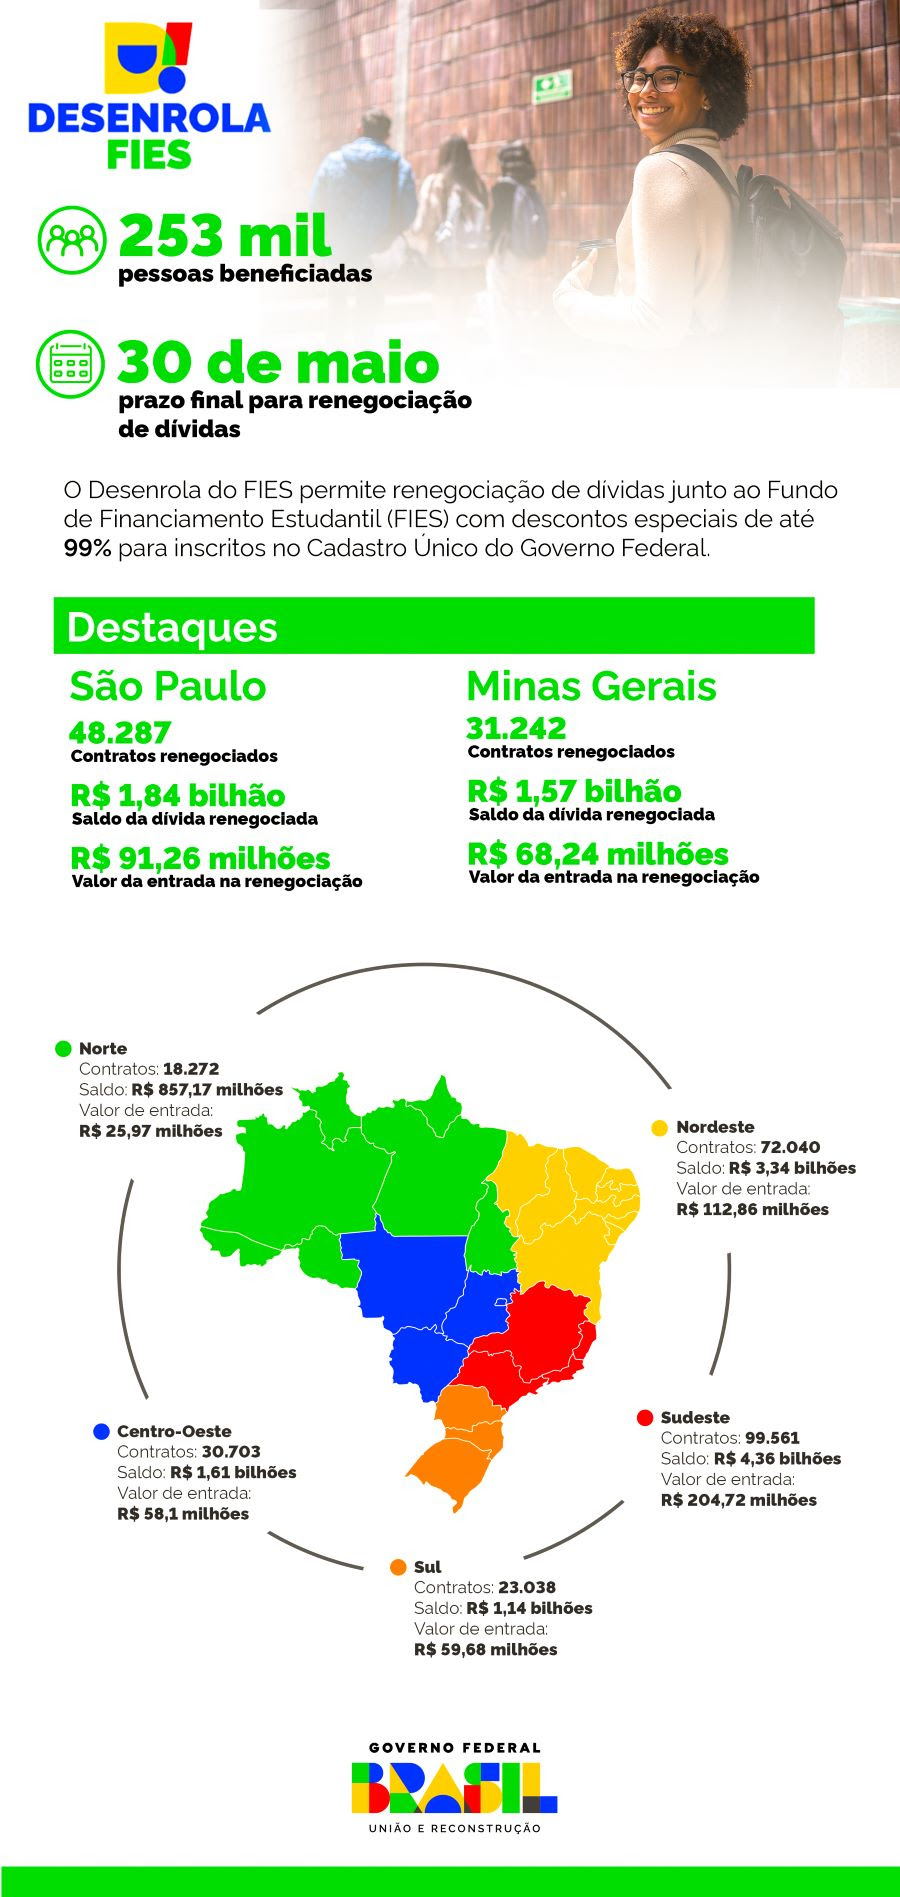  Renegociação de dívidas passou de R$ 200 mi em Mato Grosso do Sul